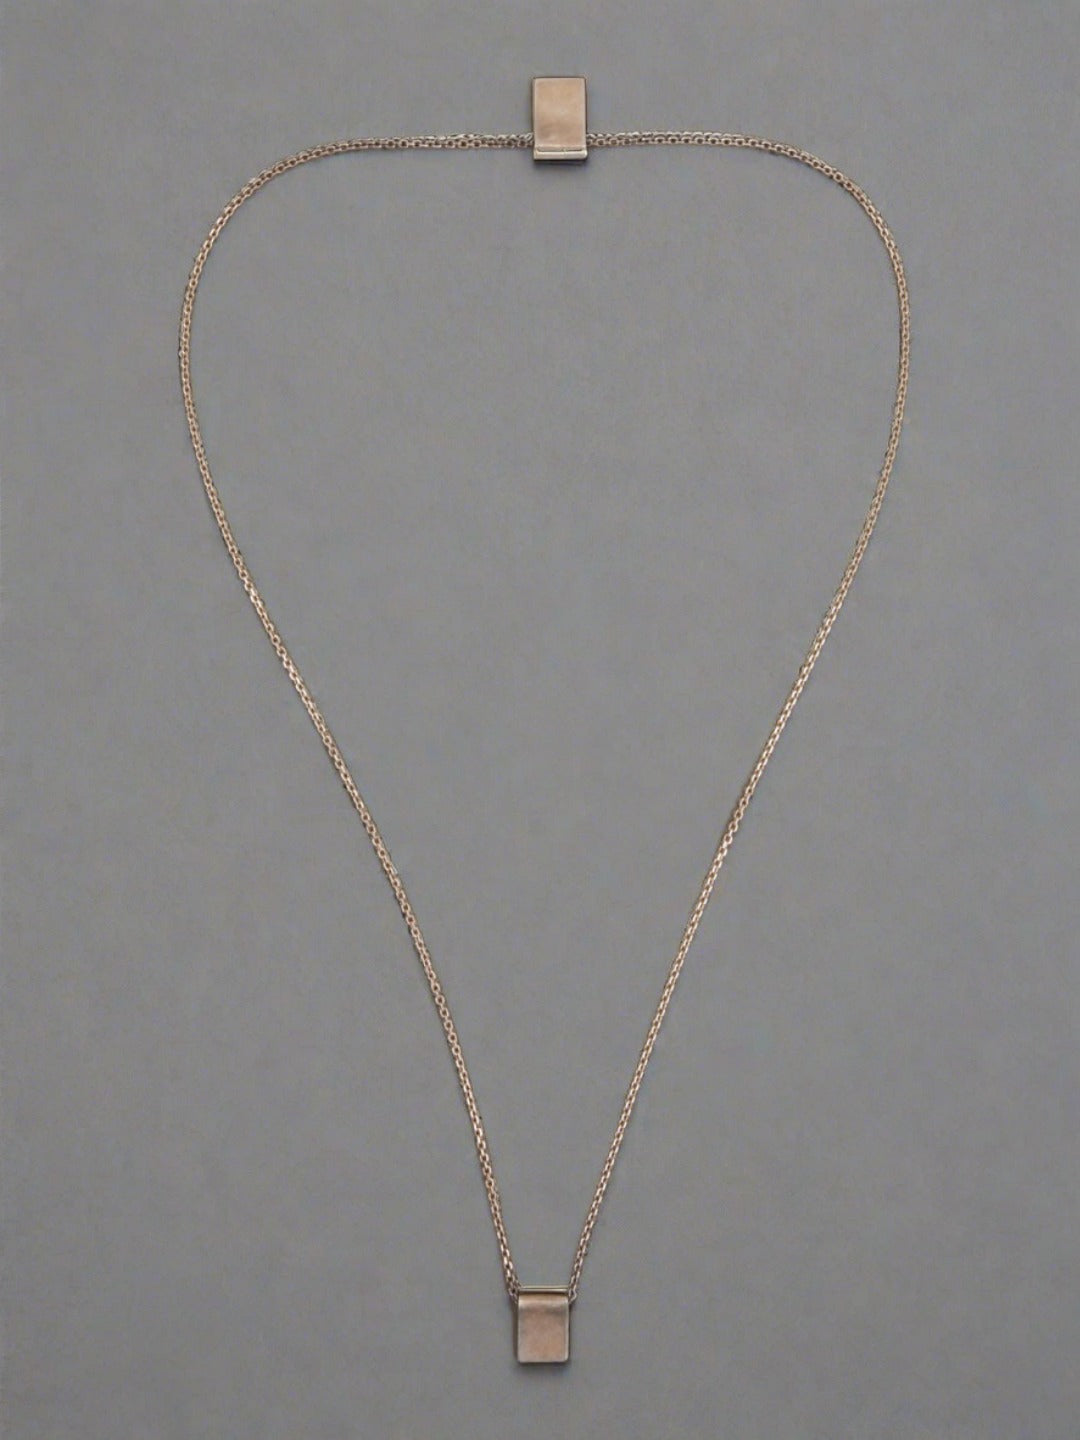 Escapulario Long Necklace